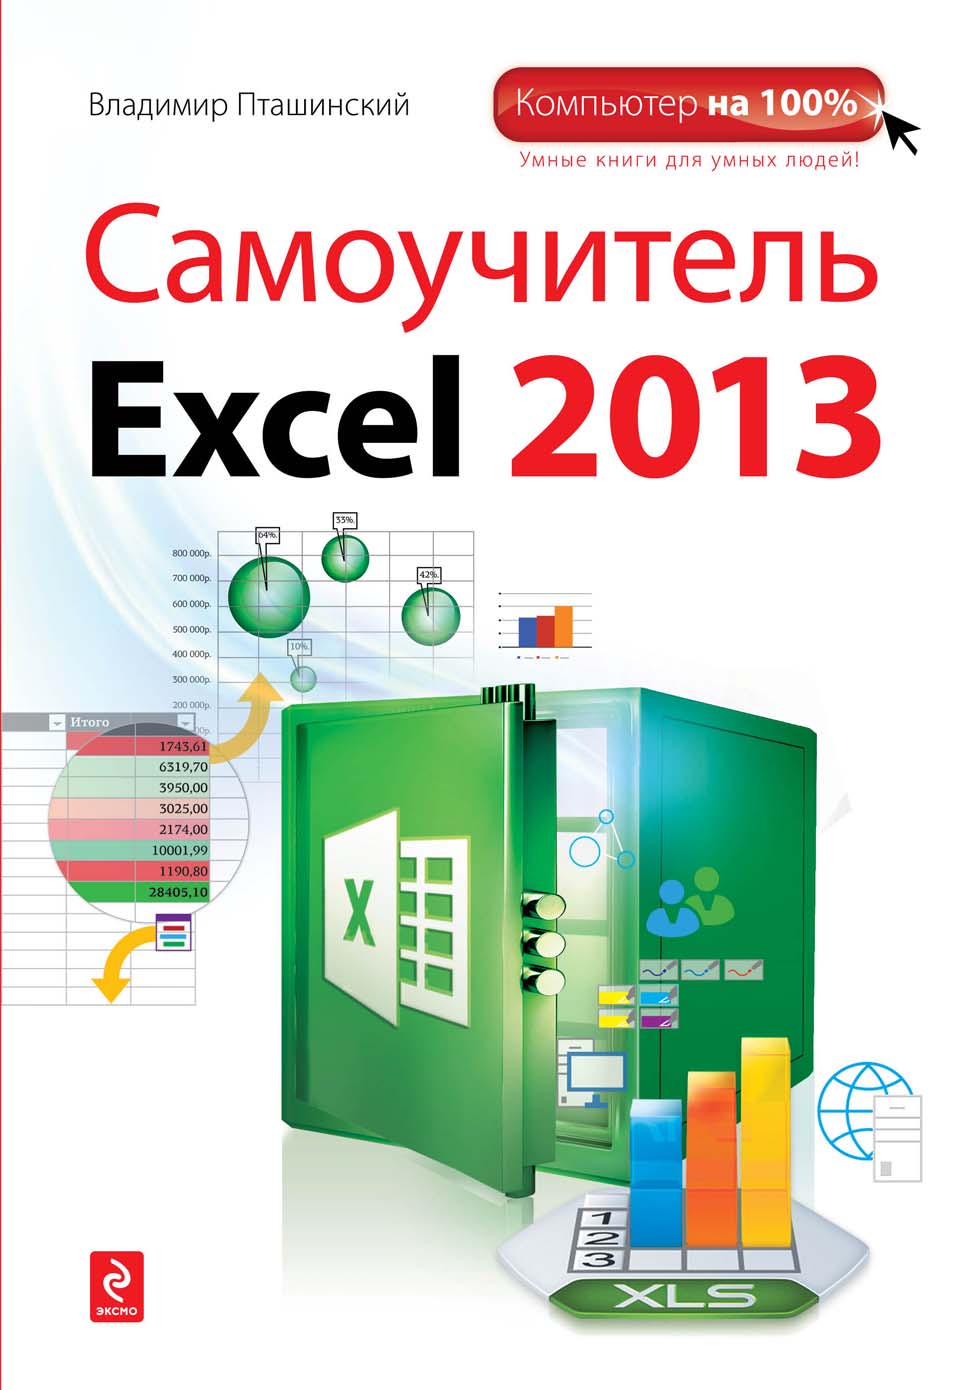 Книга Компьютер на 100% Самоучитель Excel 2013 созданная Владимир Пташинский может относится к жанру программы. Стоимость электронной книги Самоучитель Excel 2013 с идентификатором 7389371 составляет 249.00 руб.